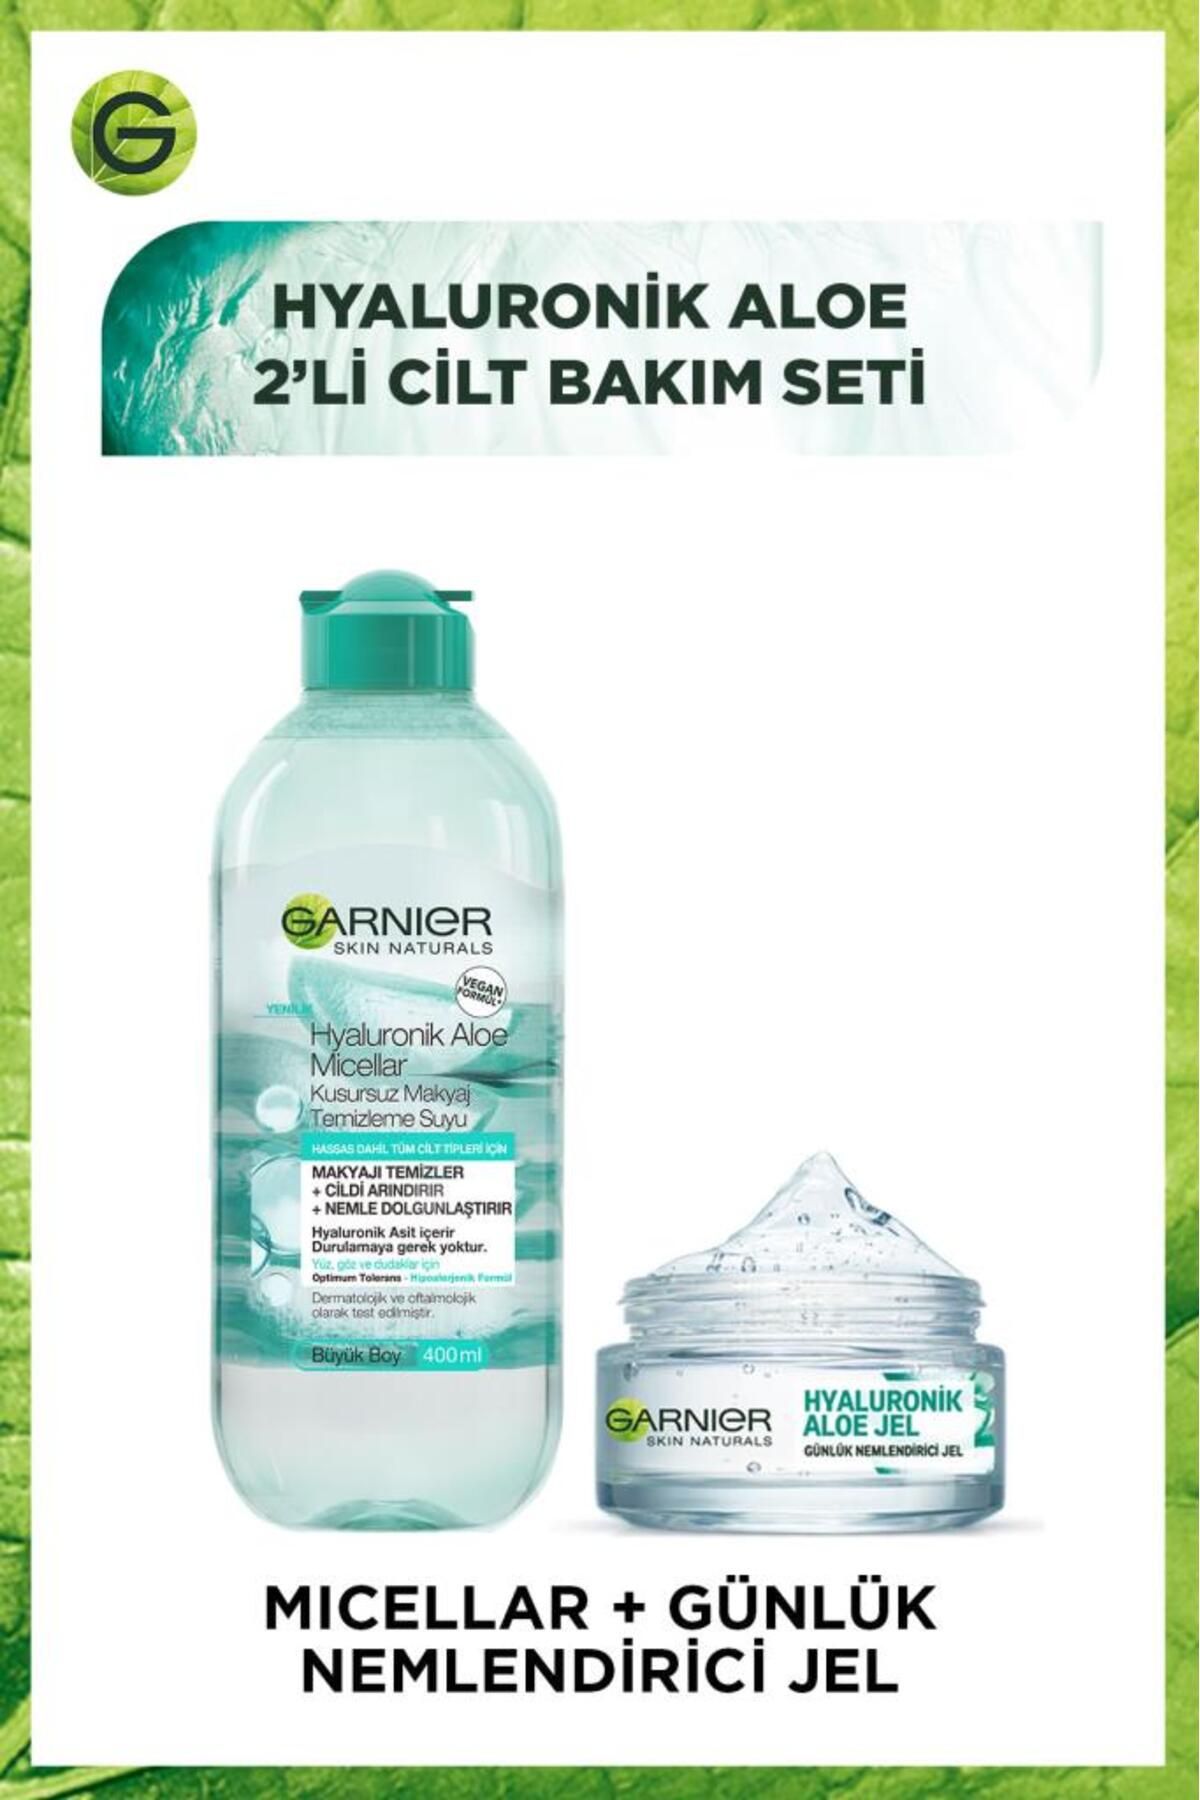 Garnier Hyaluronik Aloe 2li Cilt Bakım Seti - Günlük Nemlendirici Jel & Micellar Makyaj Temizleme Suyu 400ml